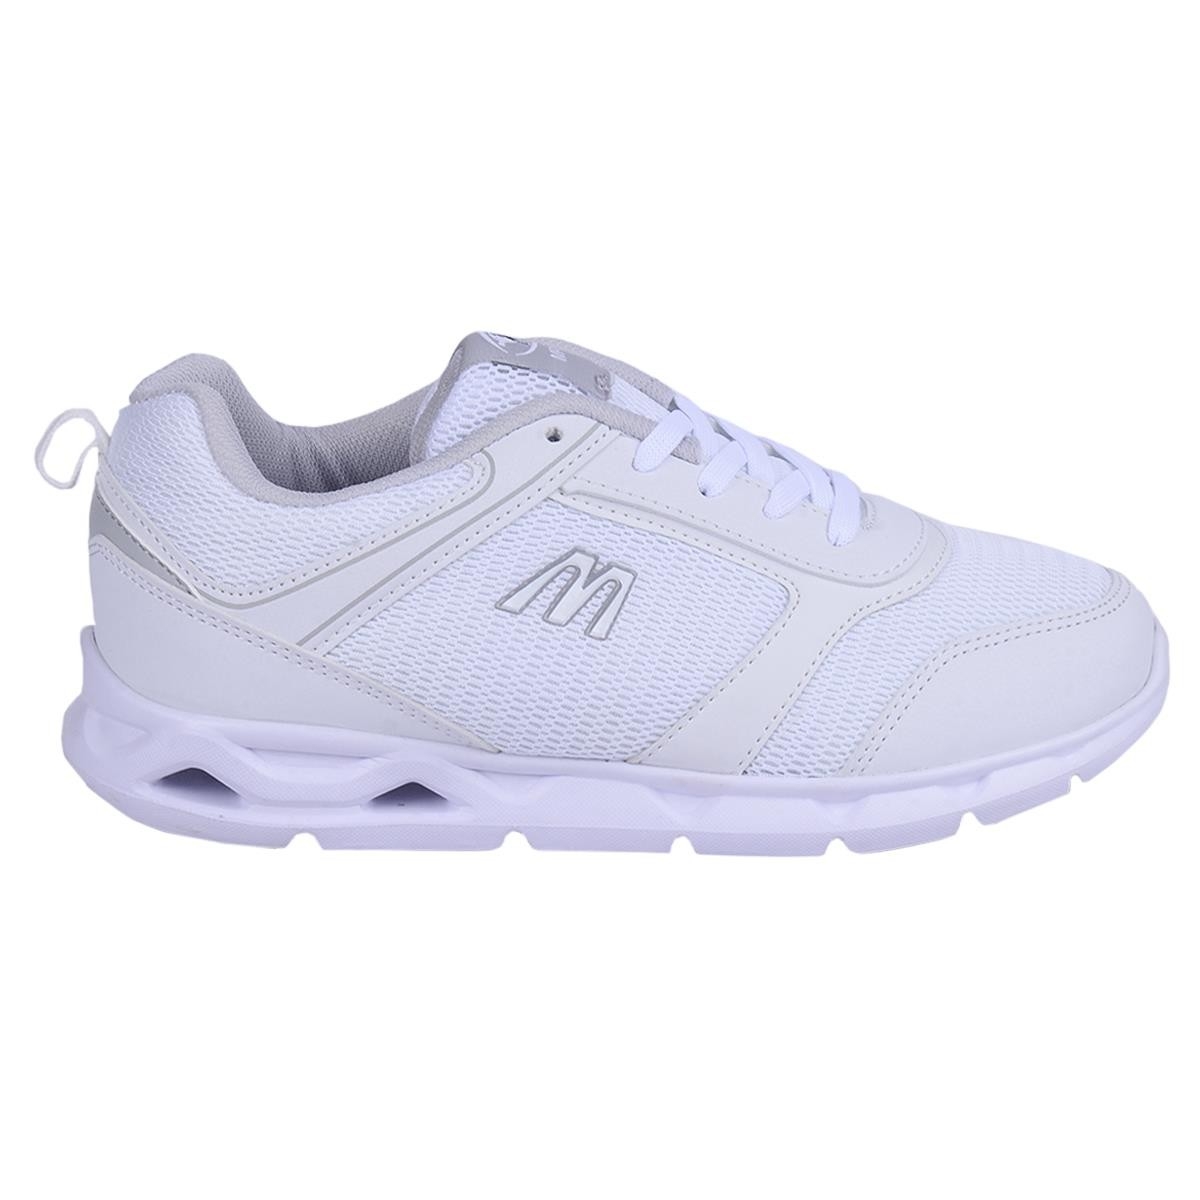 Flo 201-7404 Beyaz Loyal Yazlık Yürüyüş Koşu Bayan Spor Ayakkabı. 3